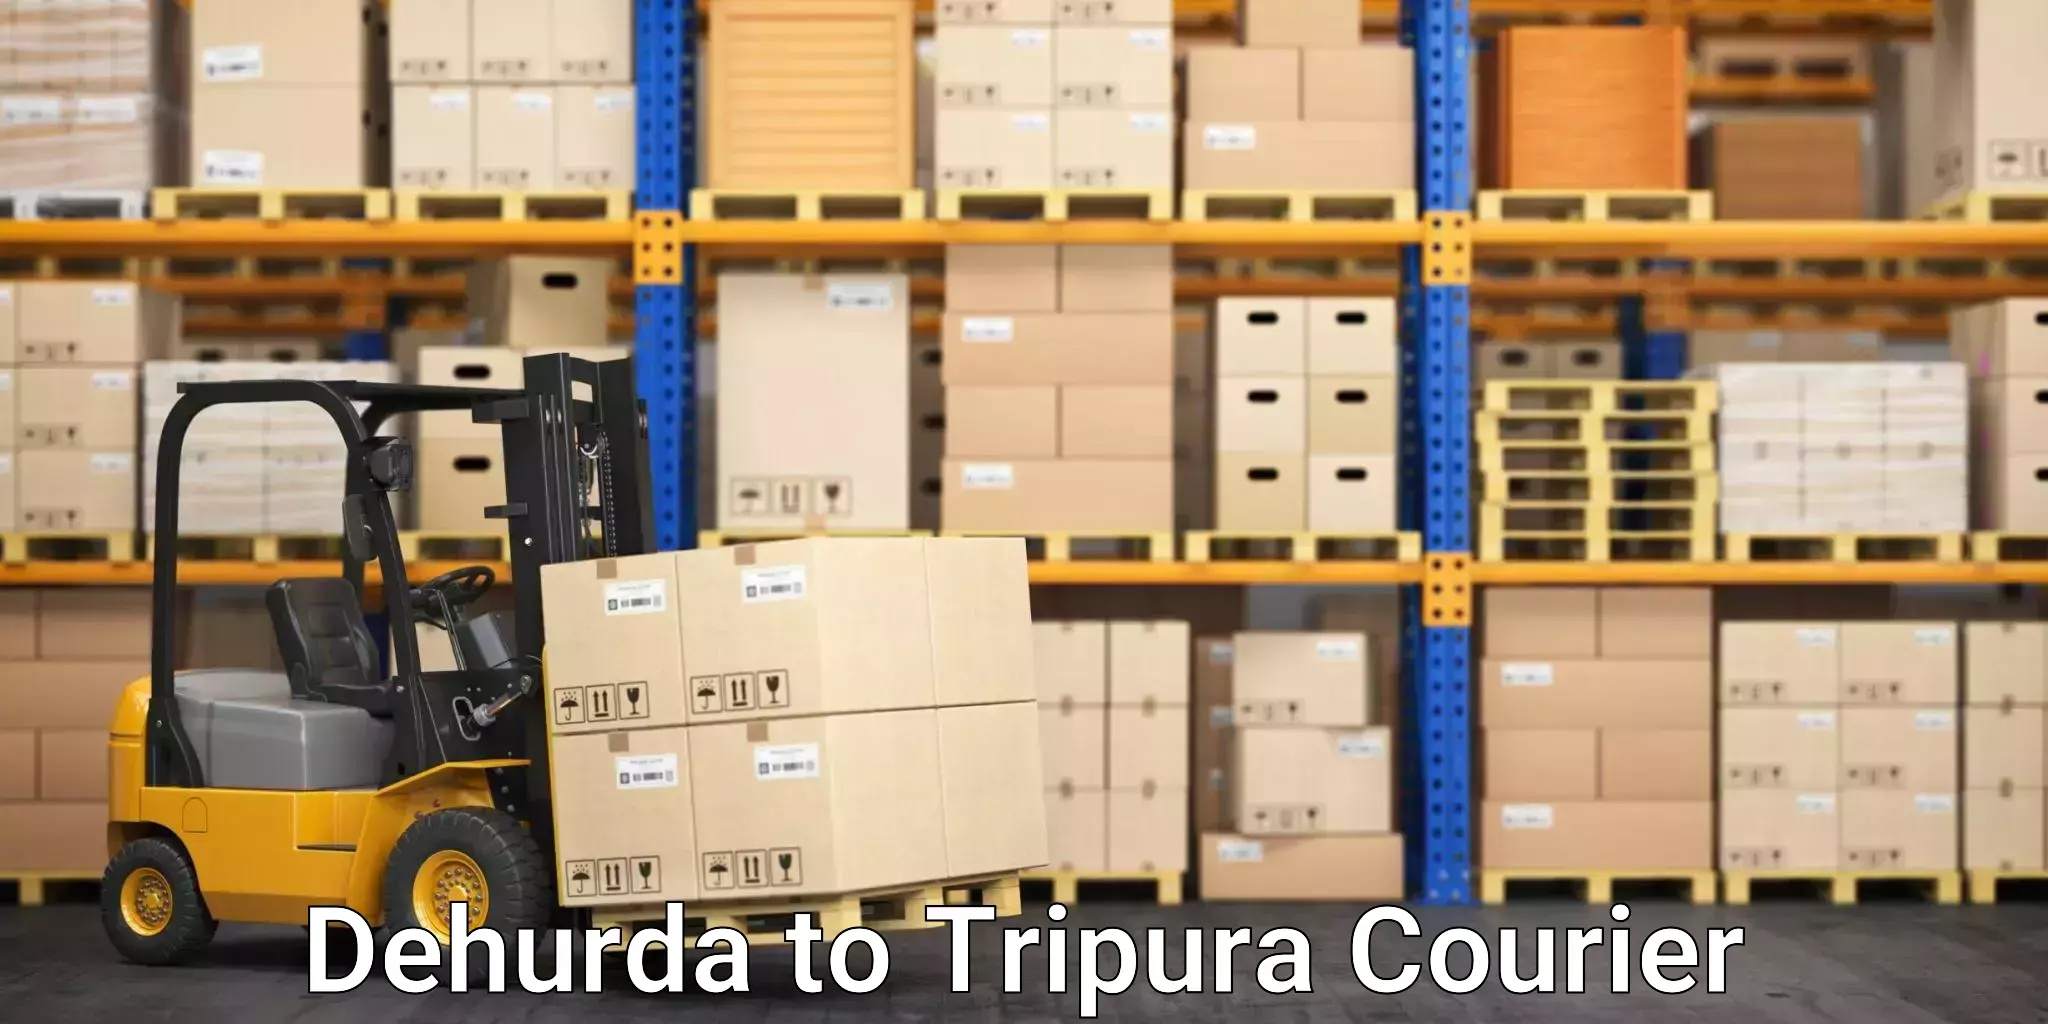 Fast parcel dispatch Dehurda to Udaipur Tripura